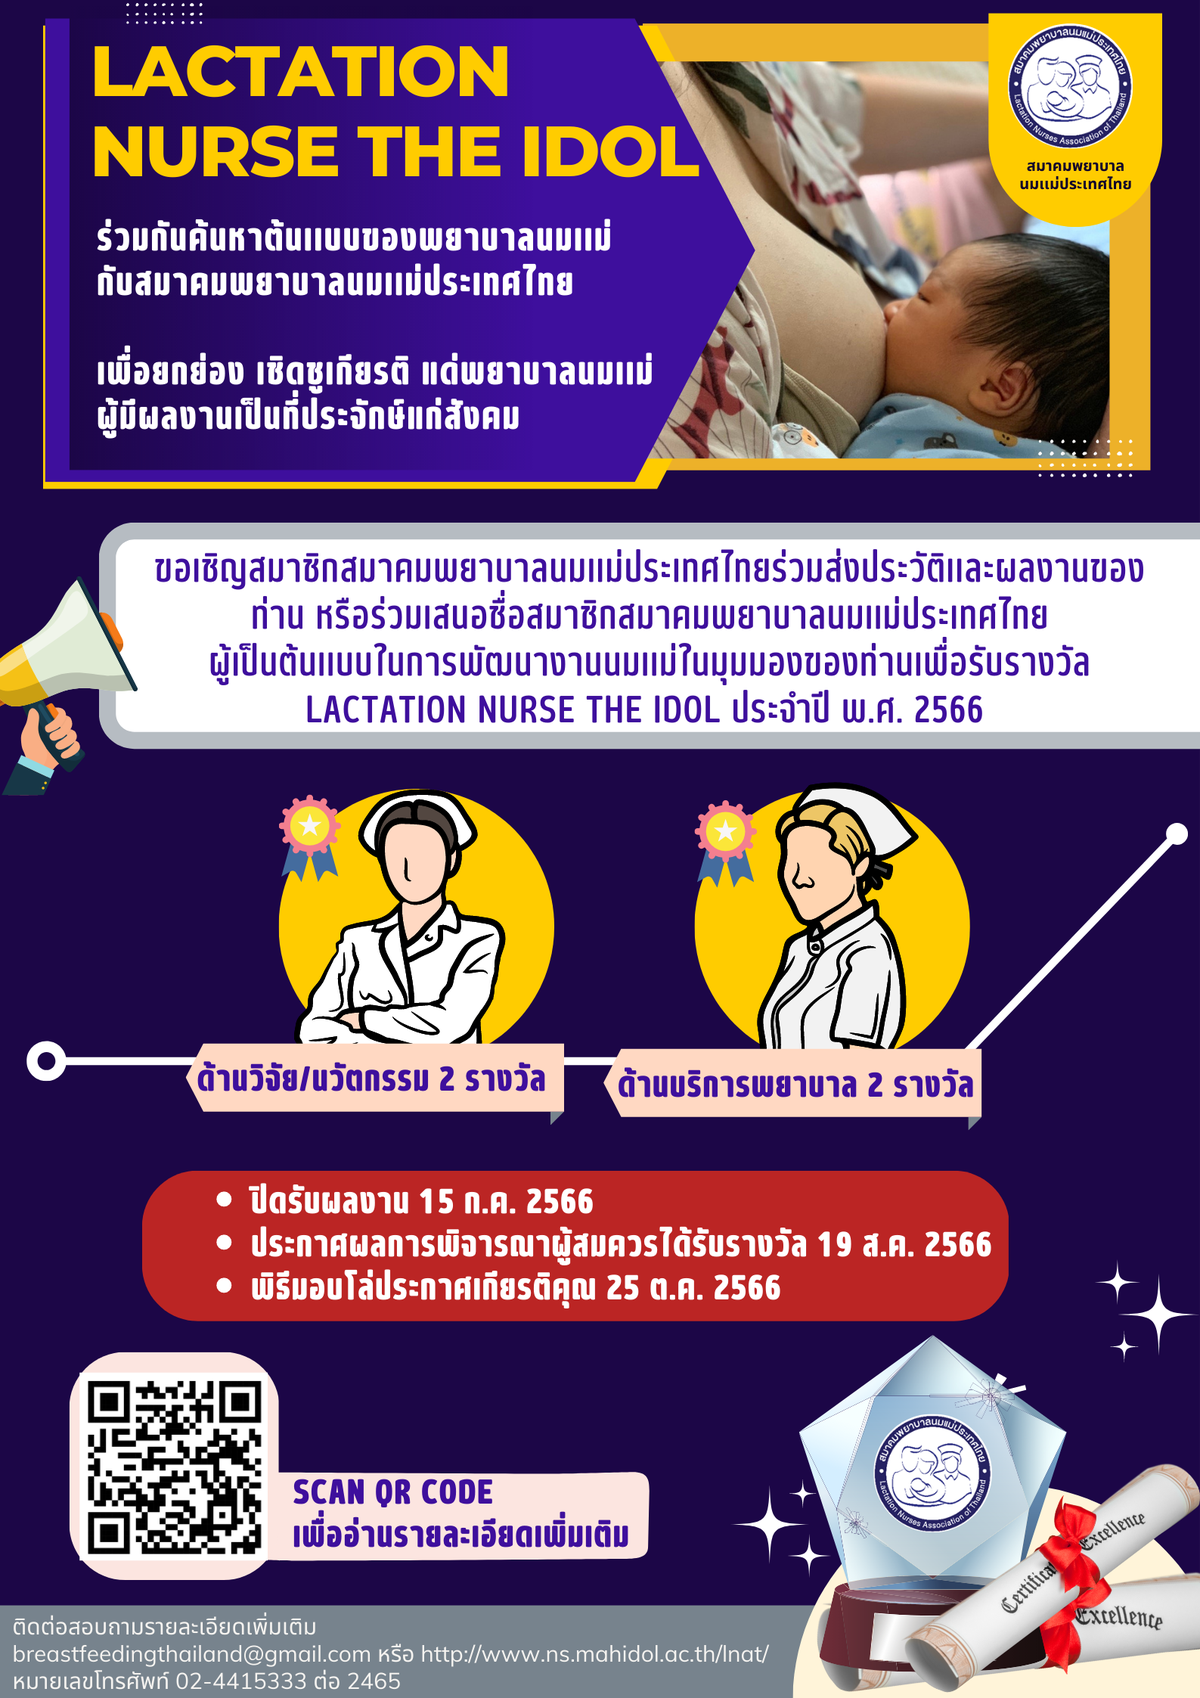 มาร่วมกันค้นหาต้นแบบของพยาบาลนมแม่ Lactation Nurse The Idol กับสมาคมพยาบาลนมแม่ประเทศไทย